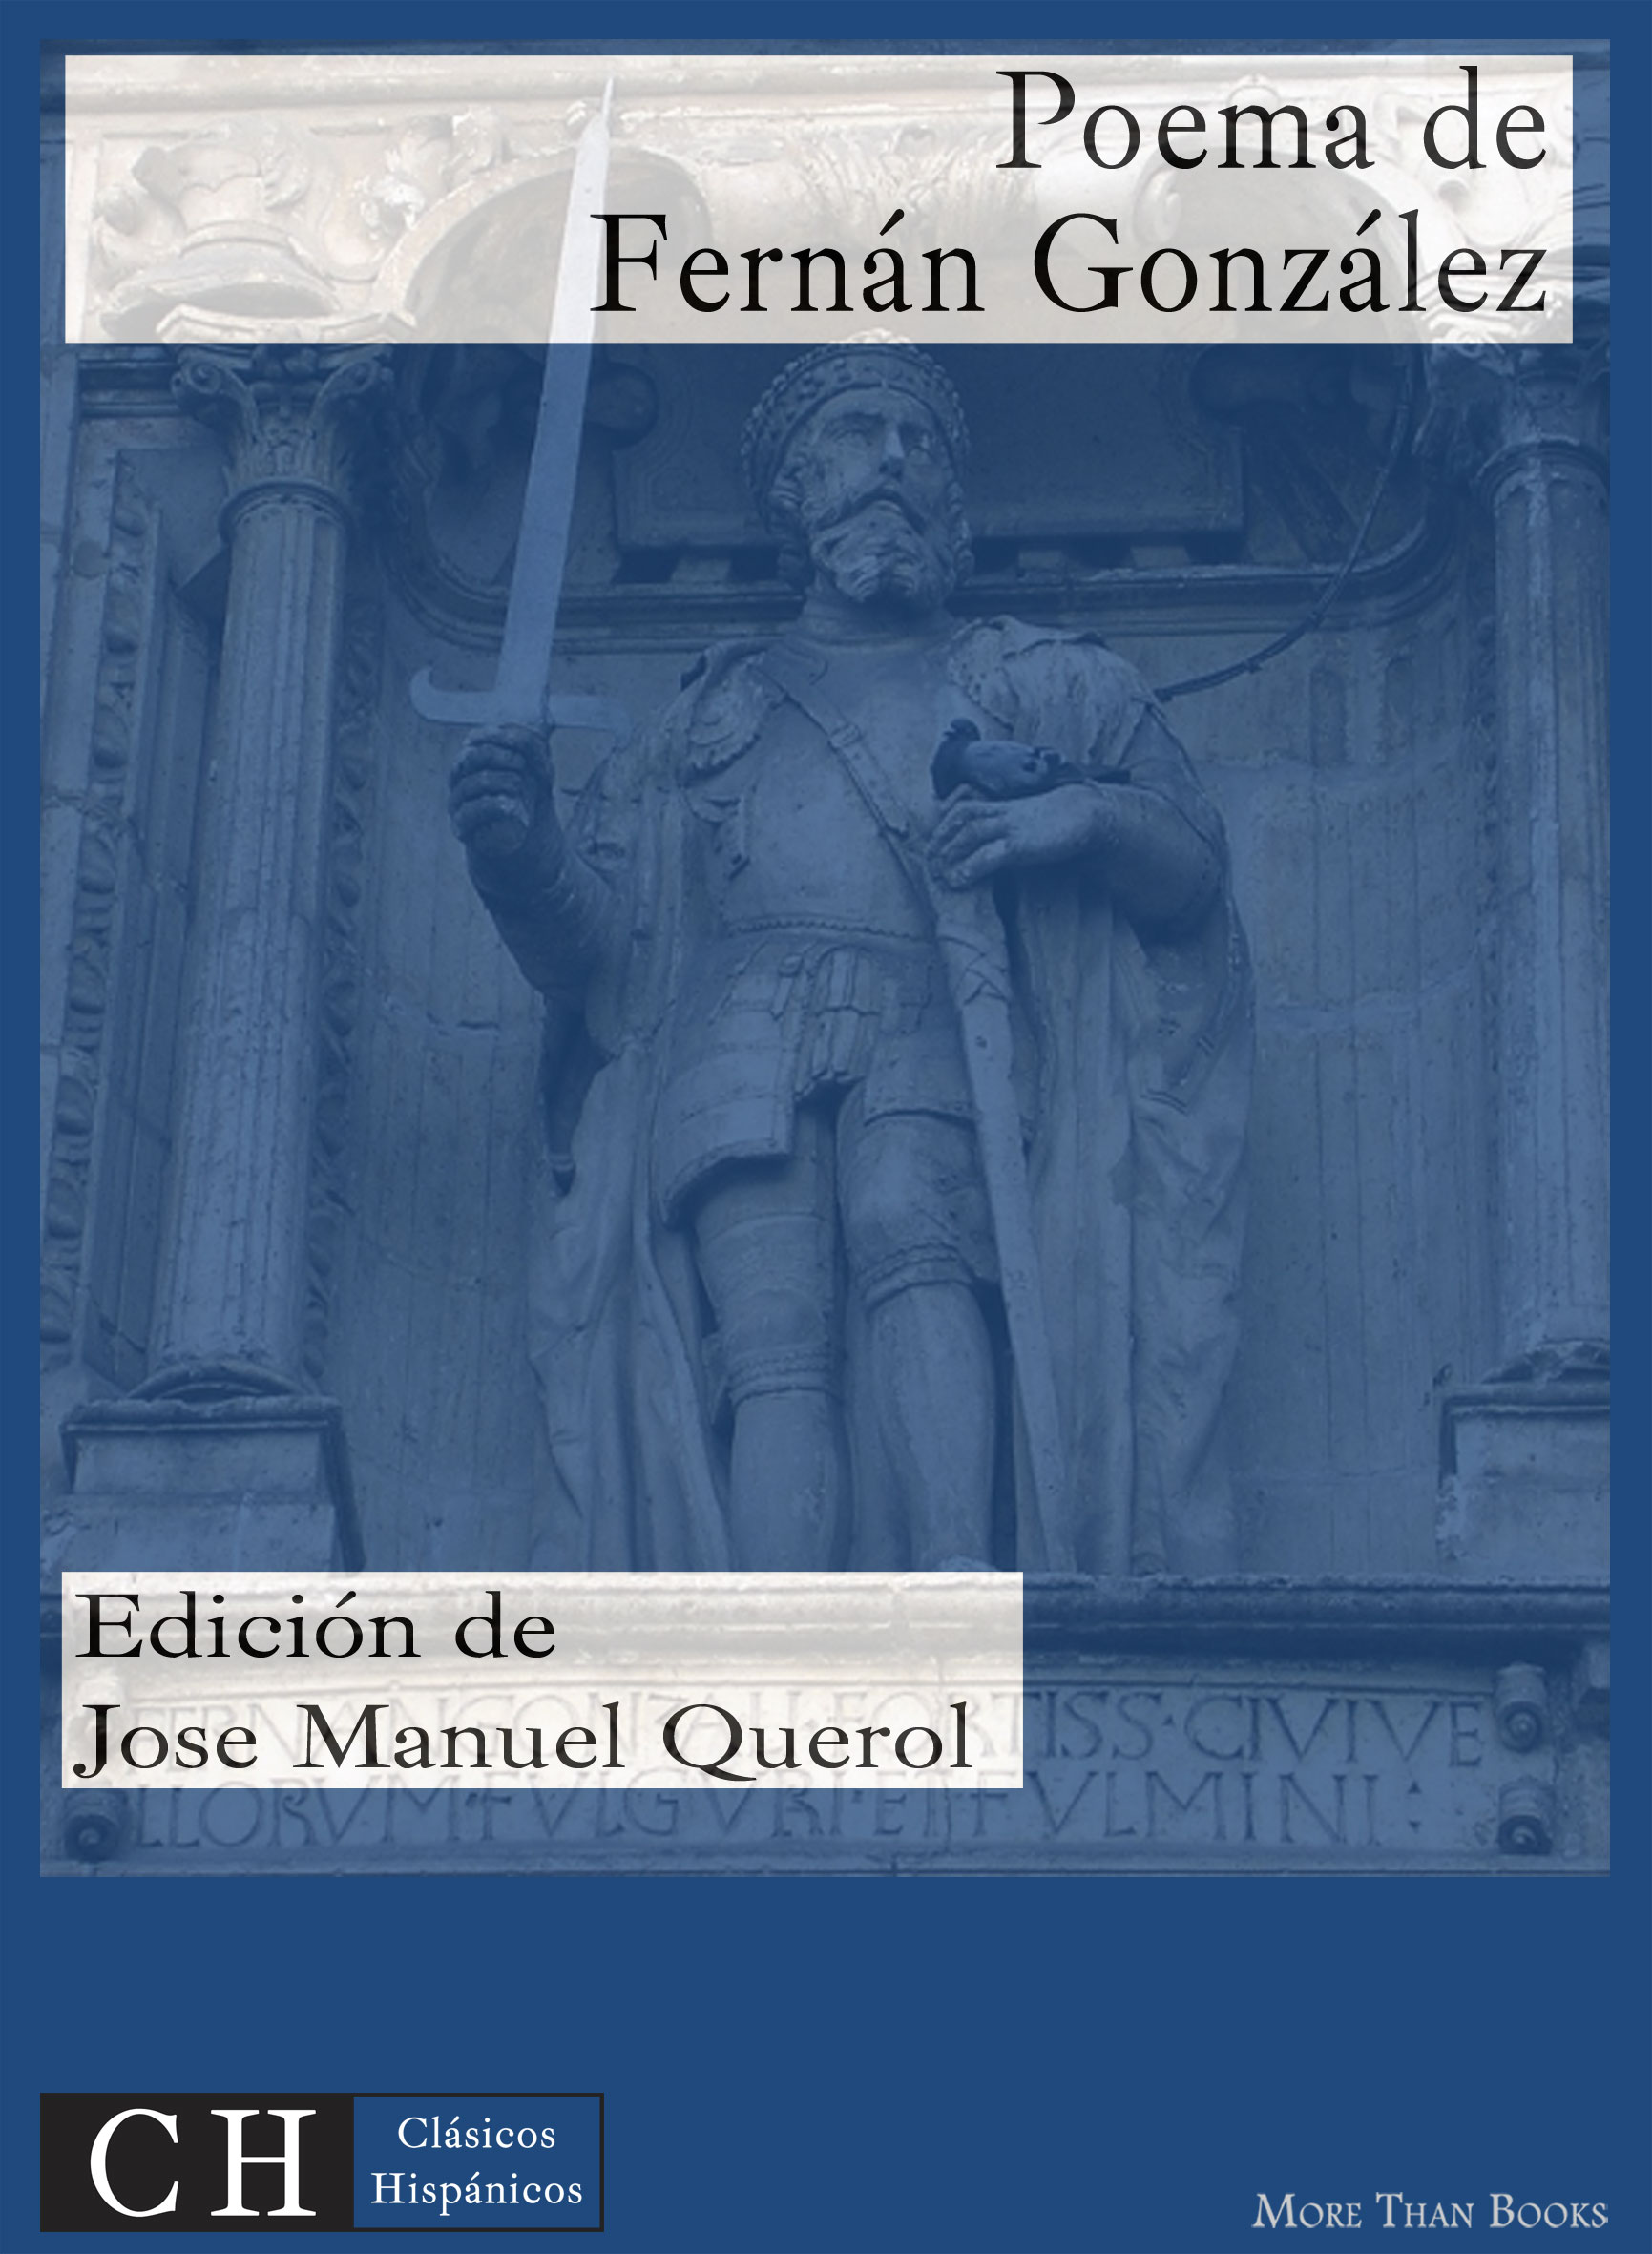 Imagen de portada del libro Poema de Fernán González